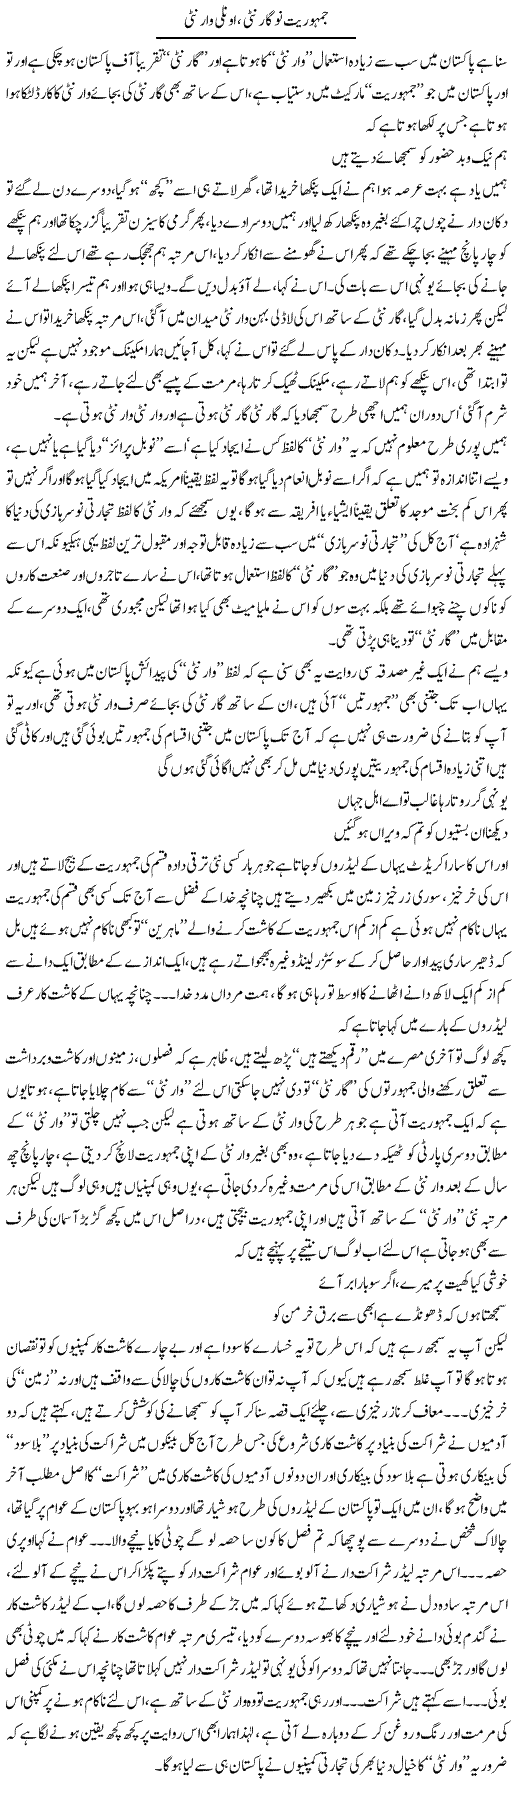 Jamhooriat Ni Gauranty Inly Warranty | Saad Ullah Jan Barq | Daily Urdu Columns